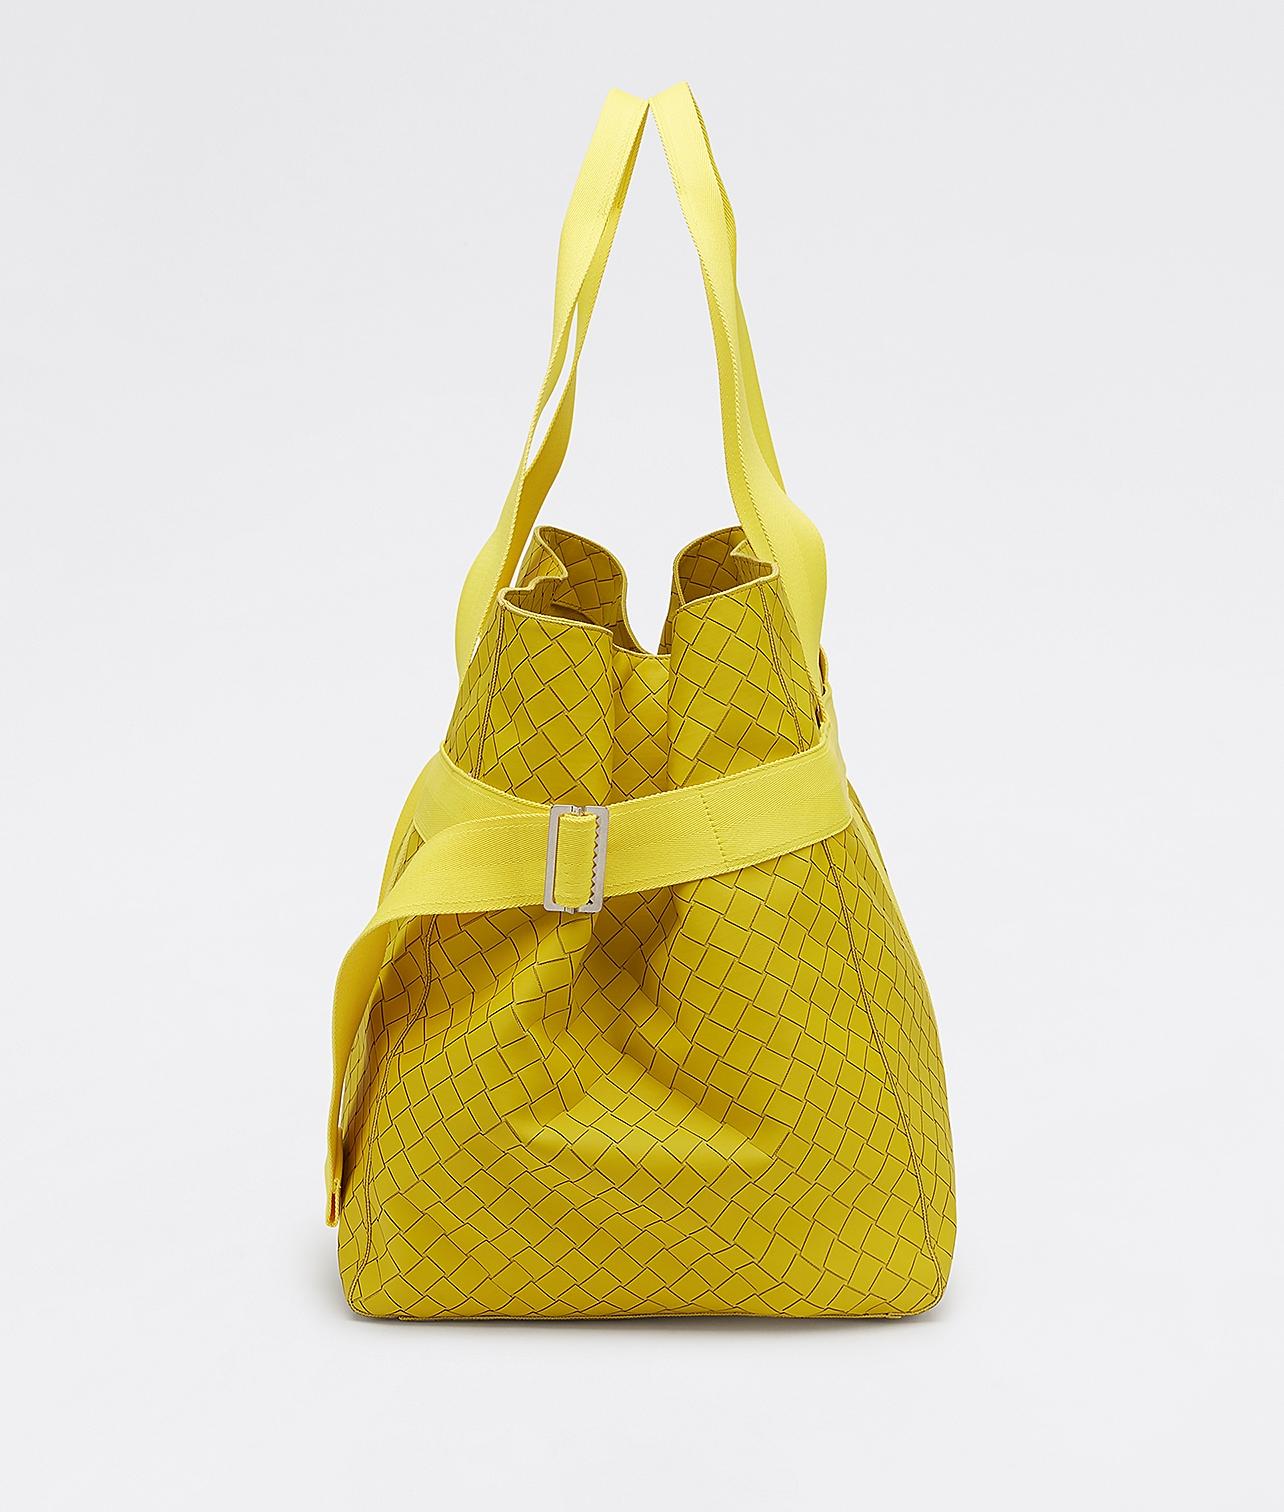 65506 auth BOTTEGA VENETA Seagrass yellow leather POINT MEDIUM Tote Bag